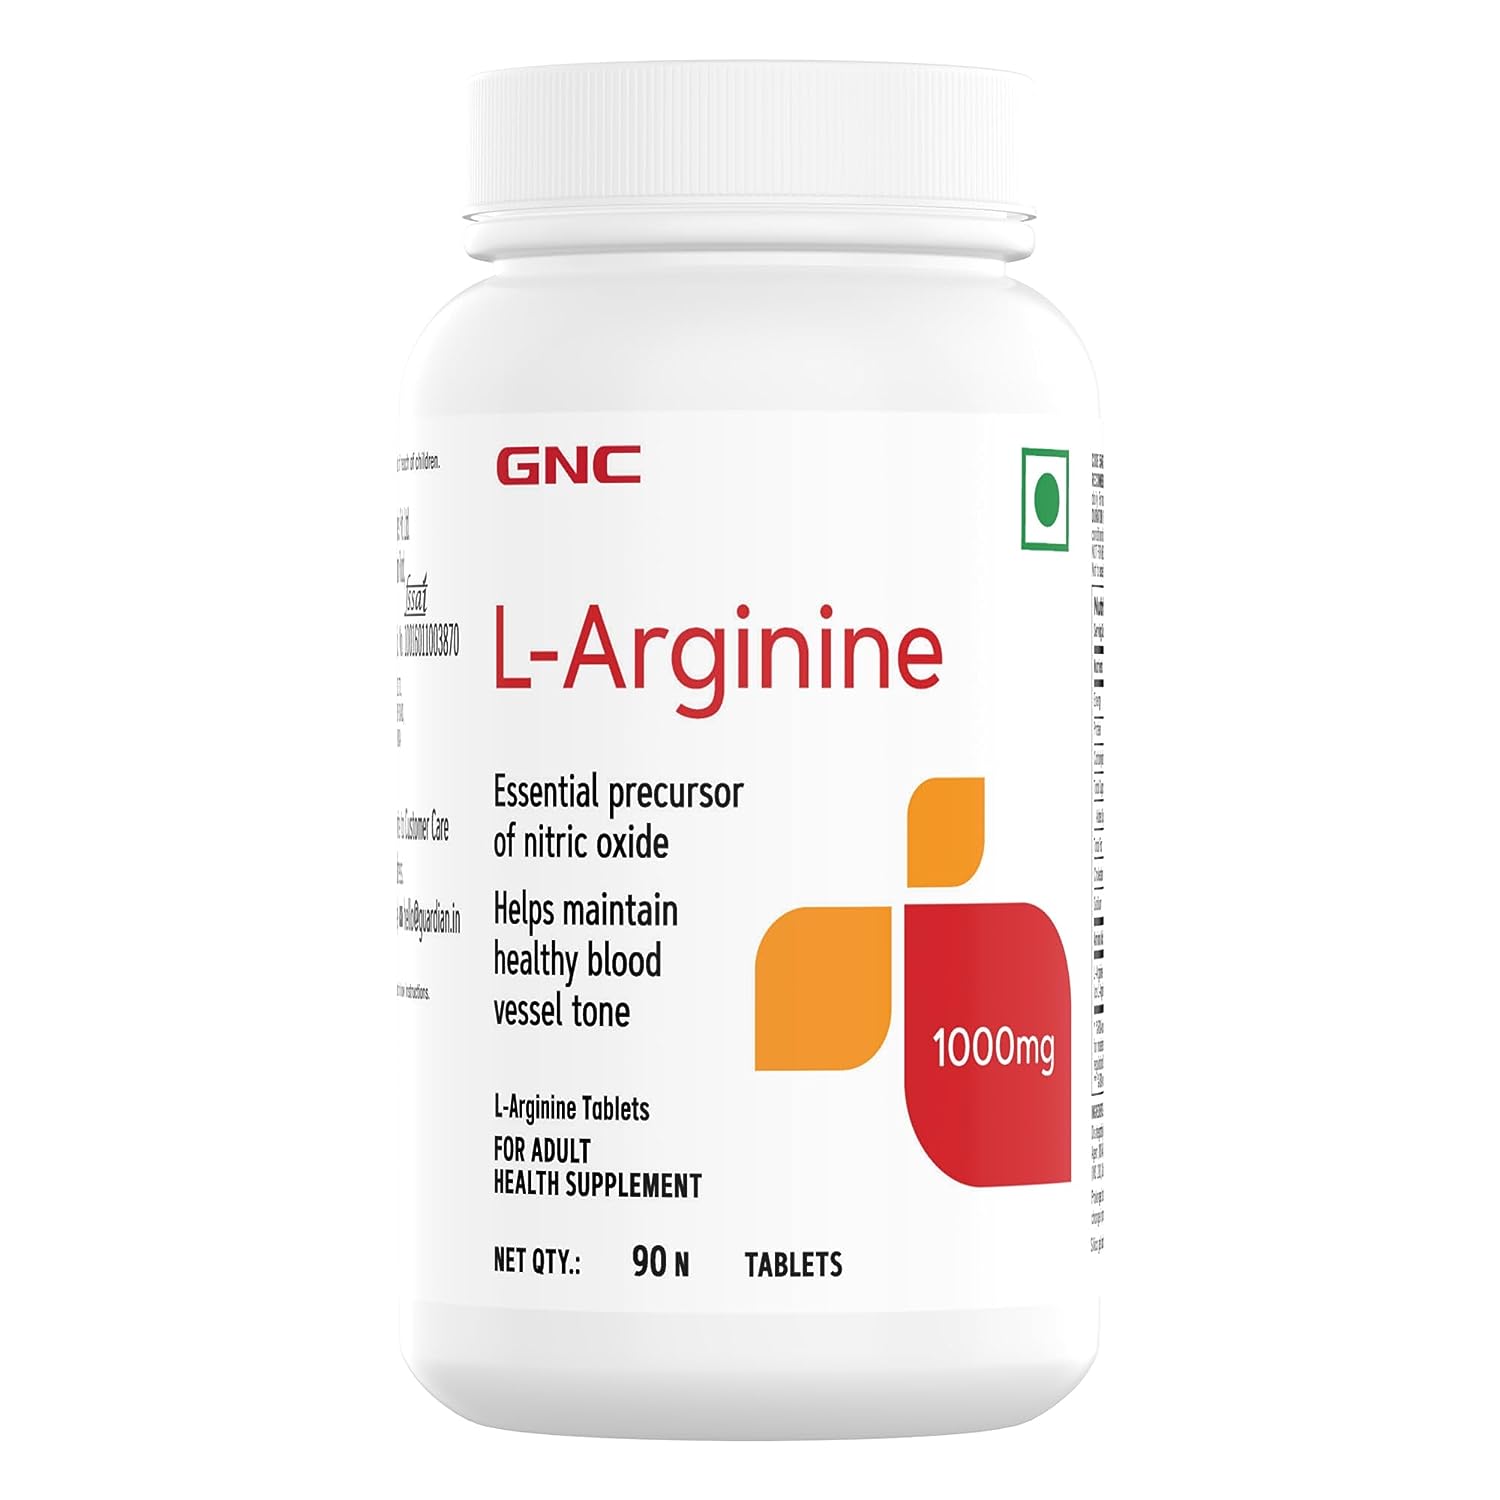 gnc-l-arginine01